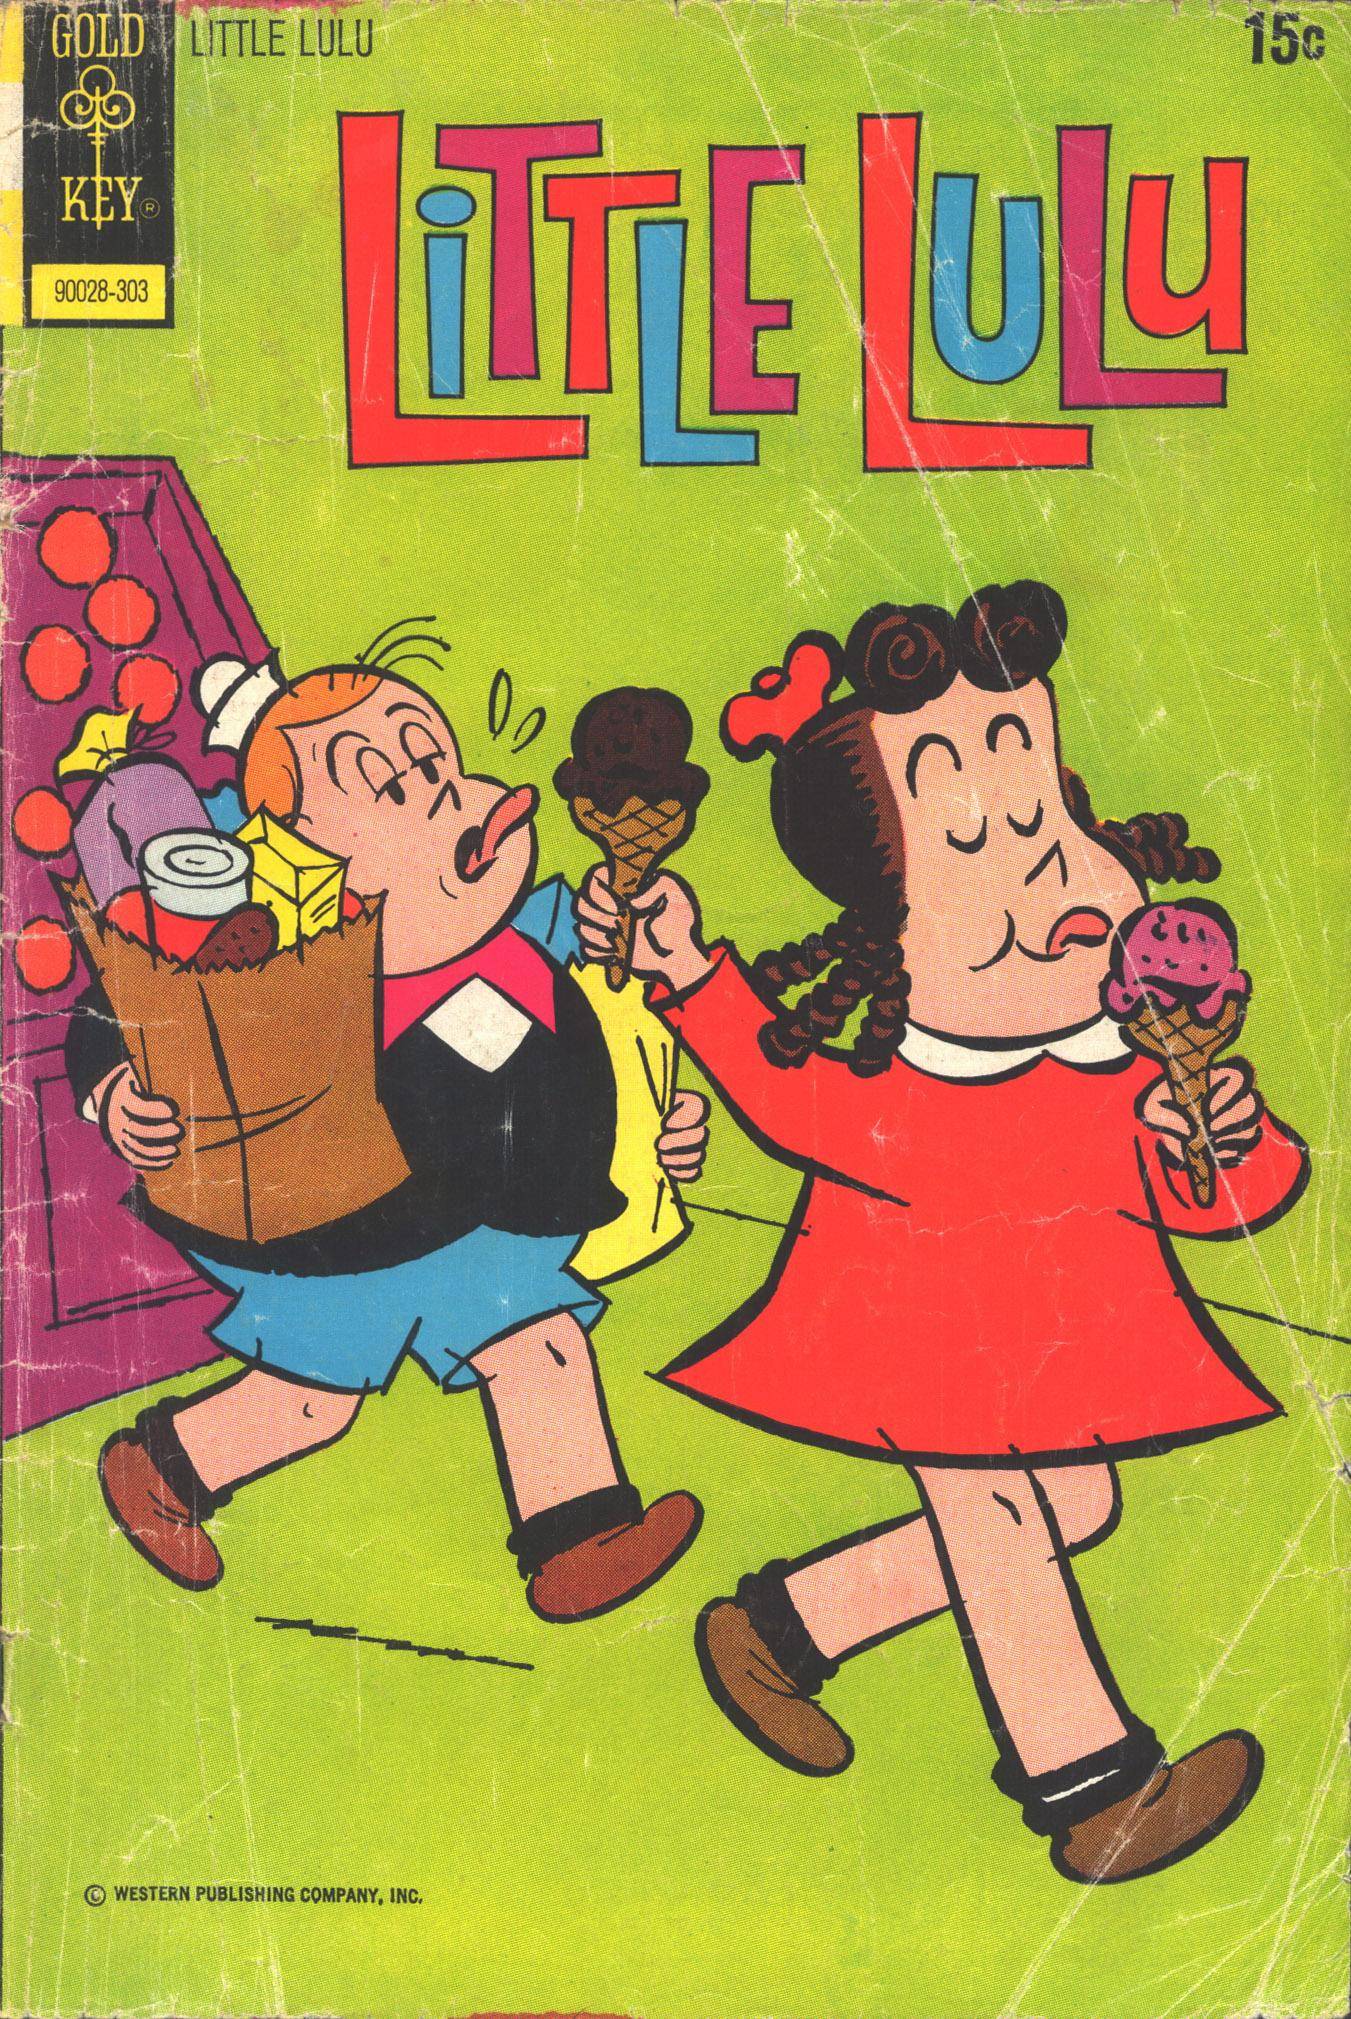 Little Lulu 1973-03 210